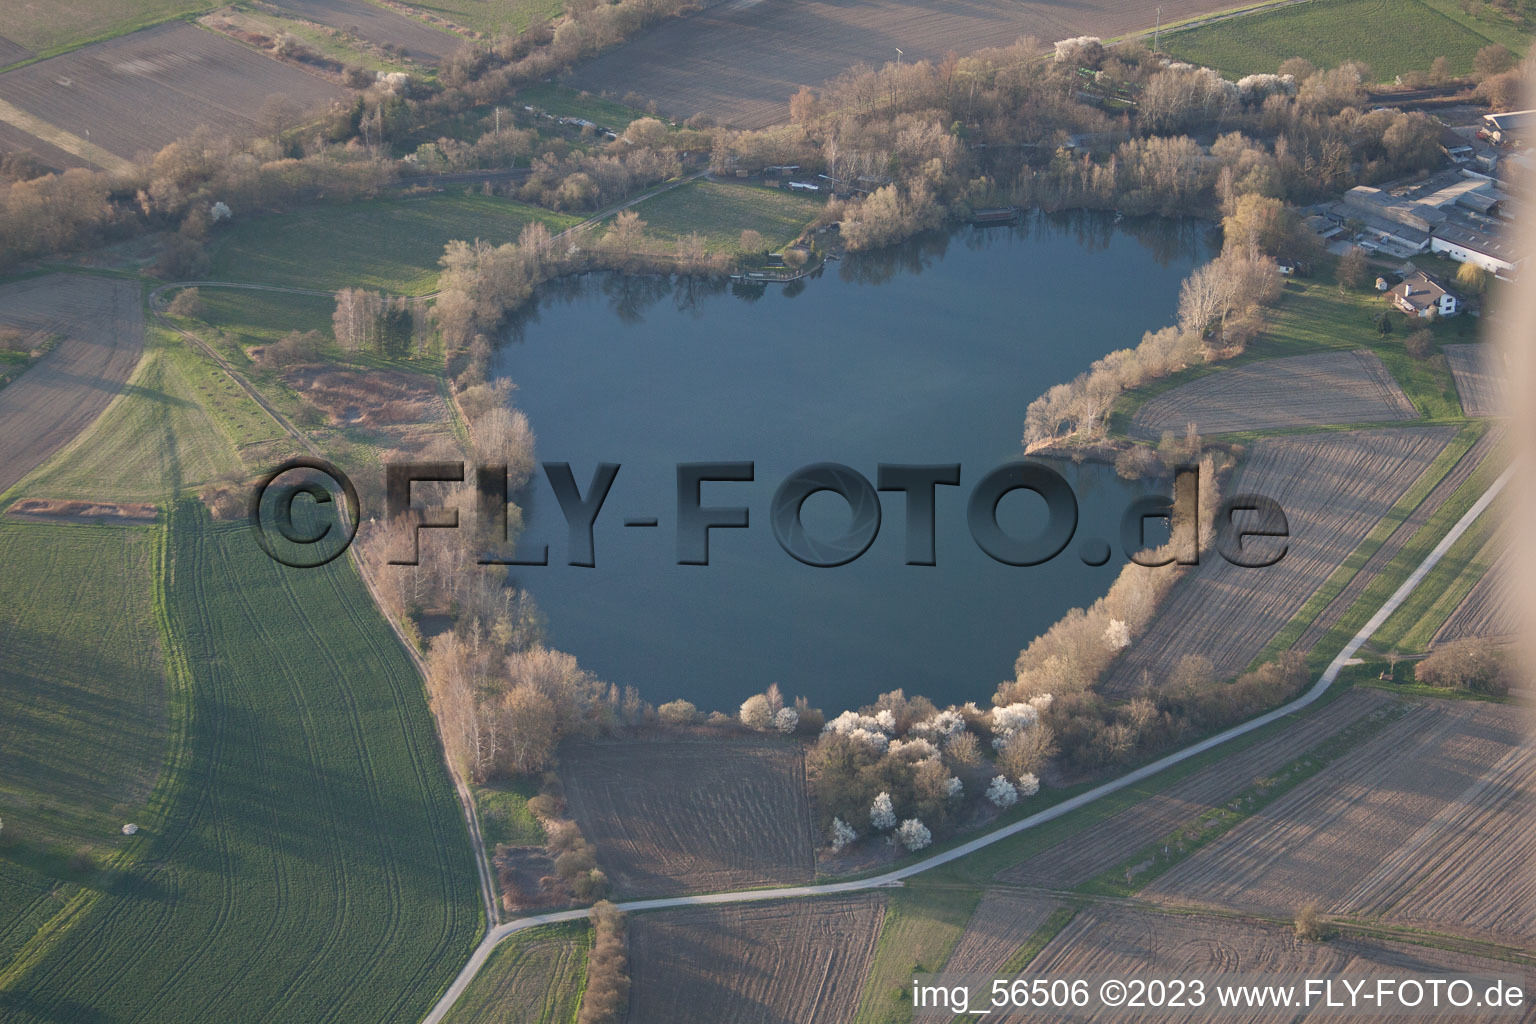 Photographie aérienne de Neuburg dans le département Rhénanie-Palatinat, Allemagne